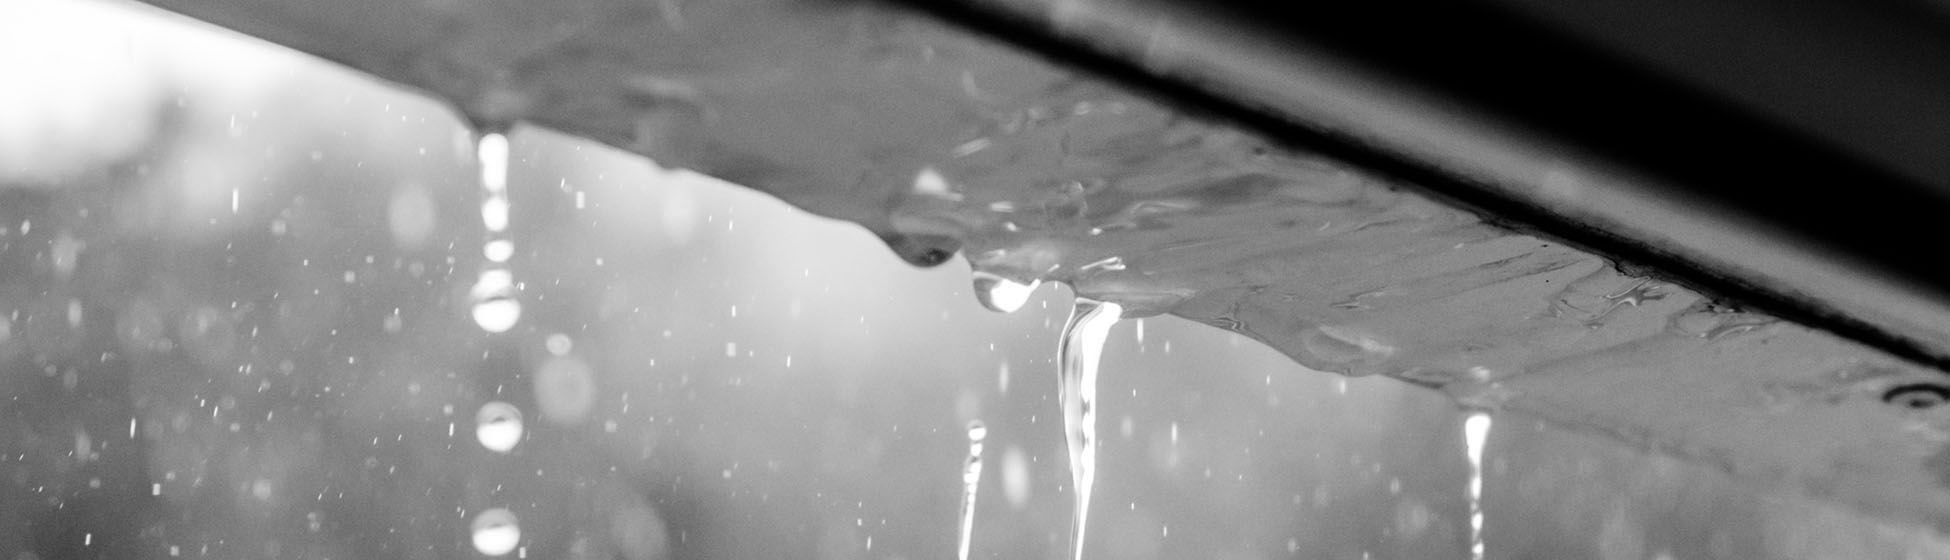 Comment reparer une fuite sur un recuperateur d eau